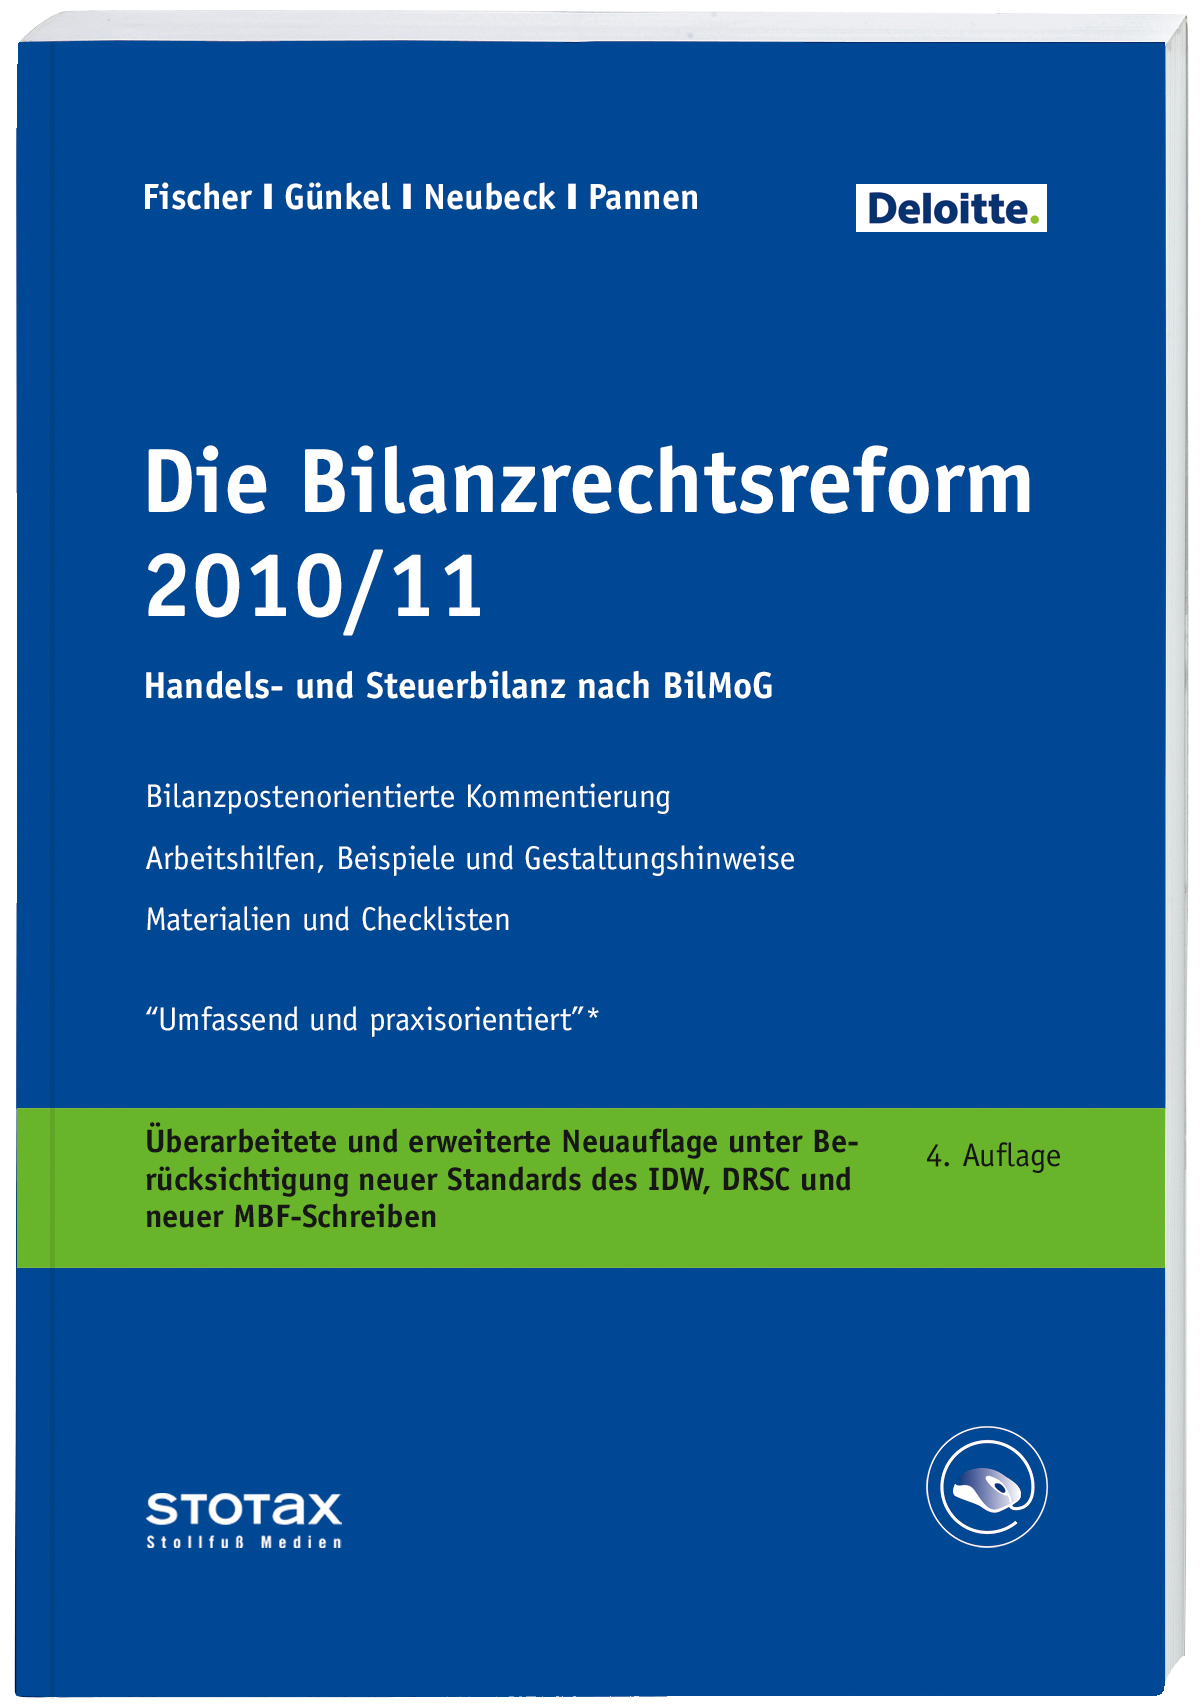 Abbildung: Die Bilanzrechtsreform 2010/2011